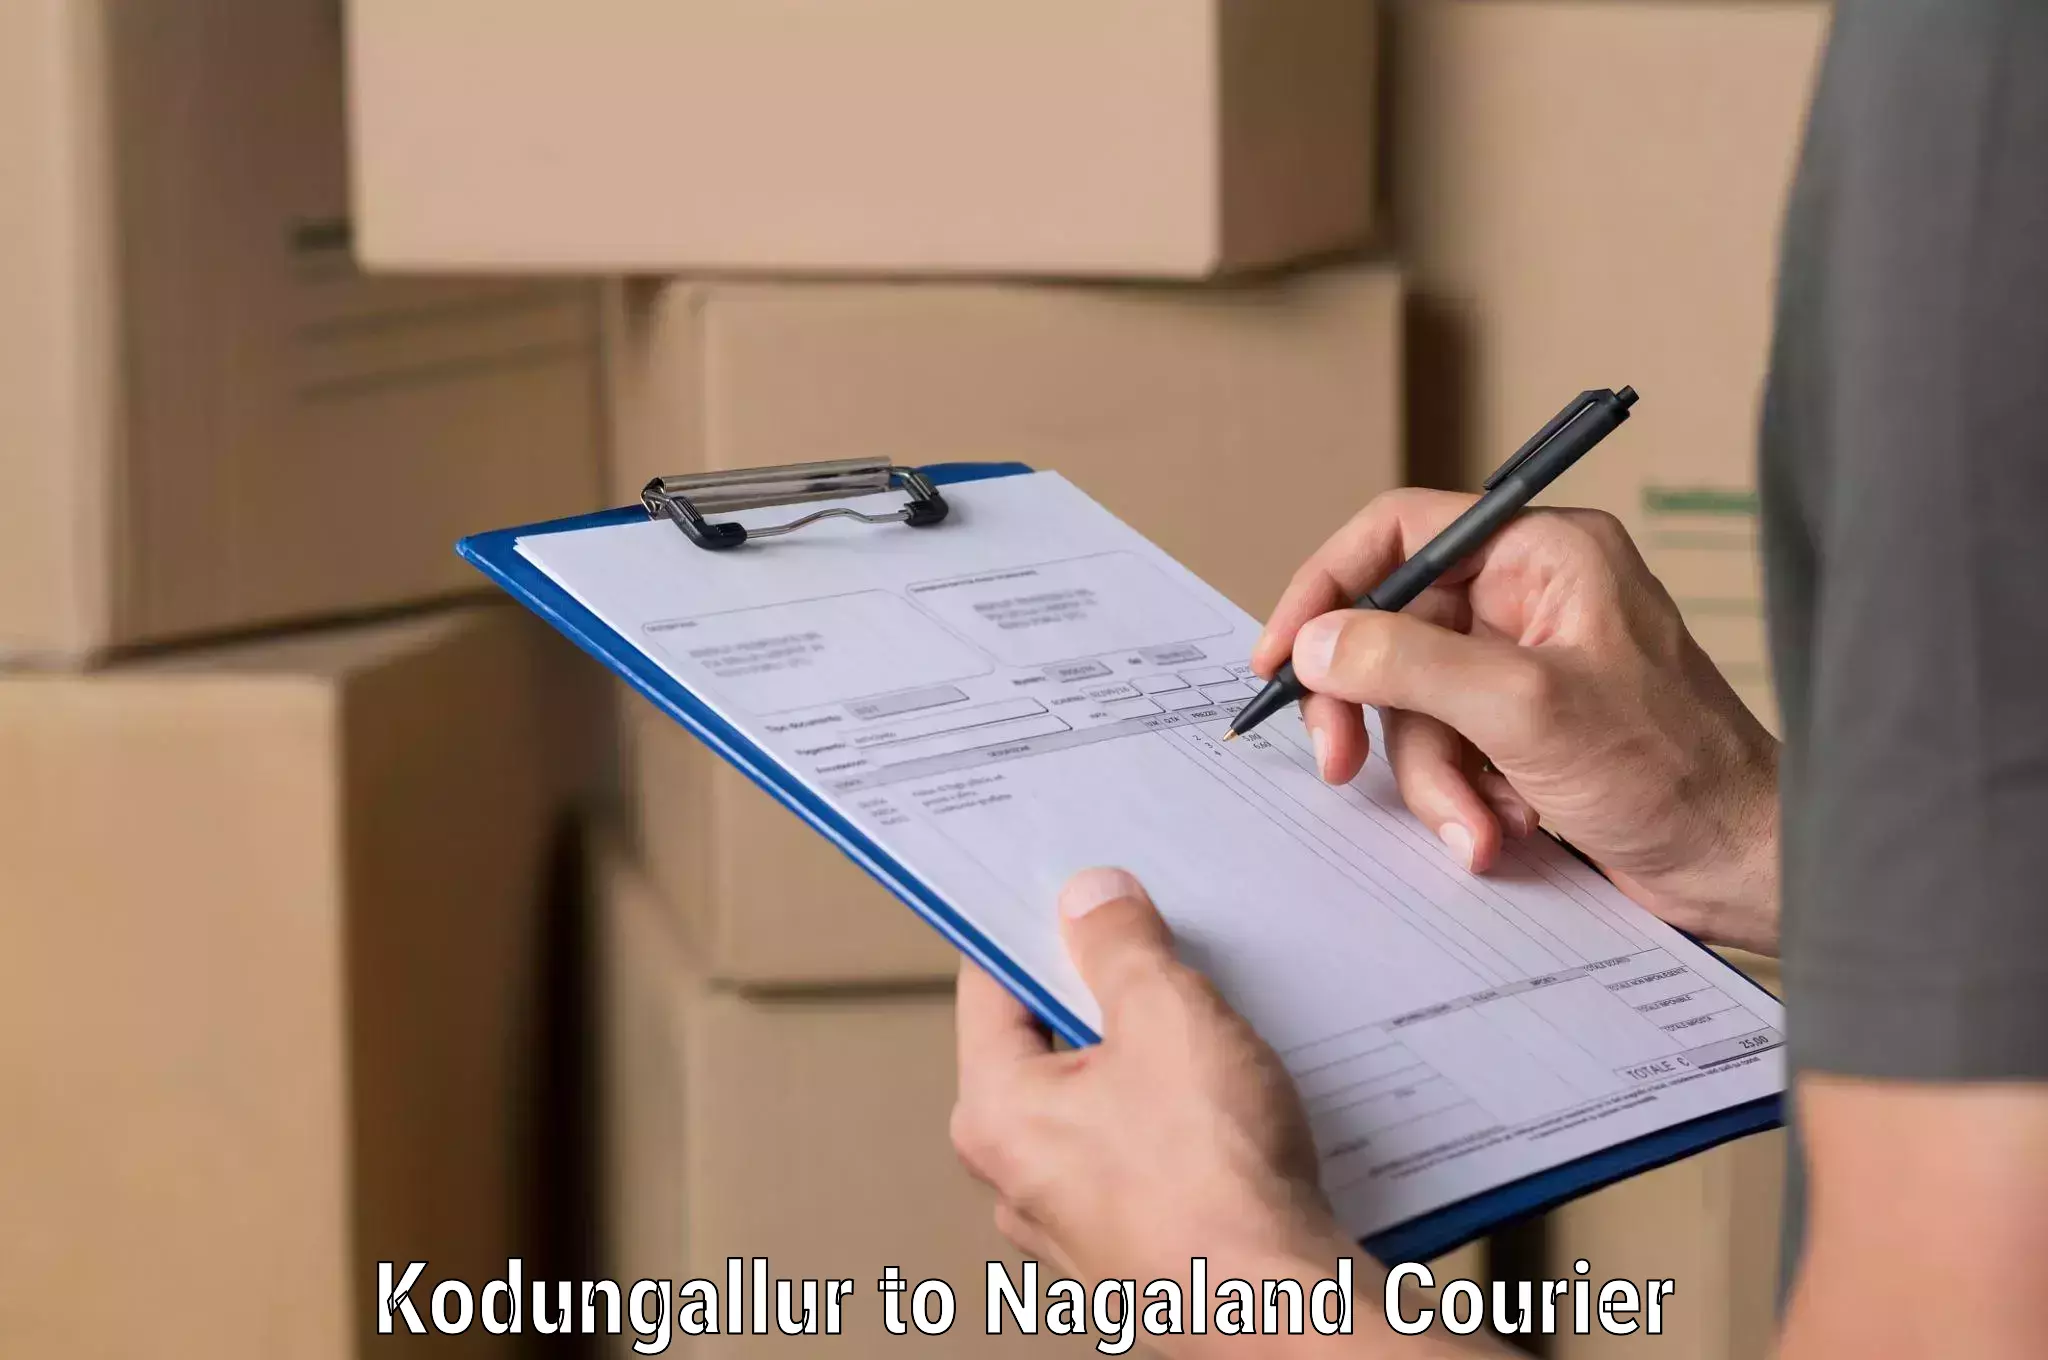 Doorstep delivery service Kodungallur to Dimapur